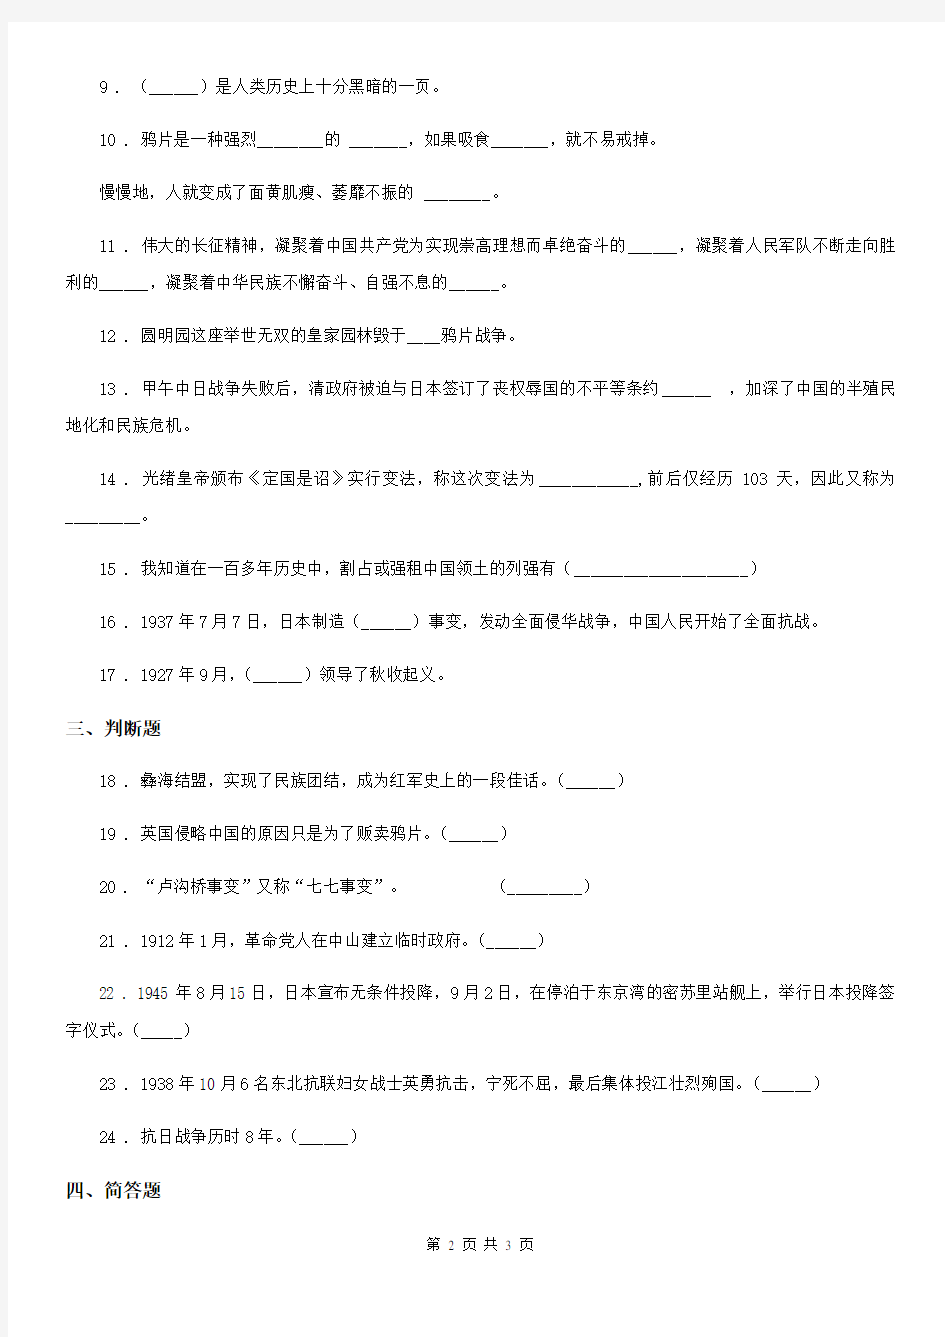 道德与法制2019年六年级上册第二单元不屈的中国人单元测试卷(I)卷(模拟)